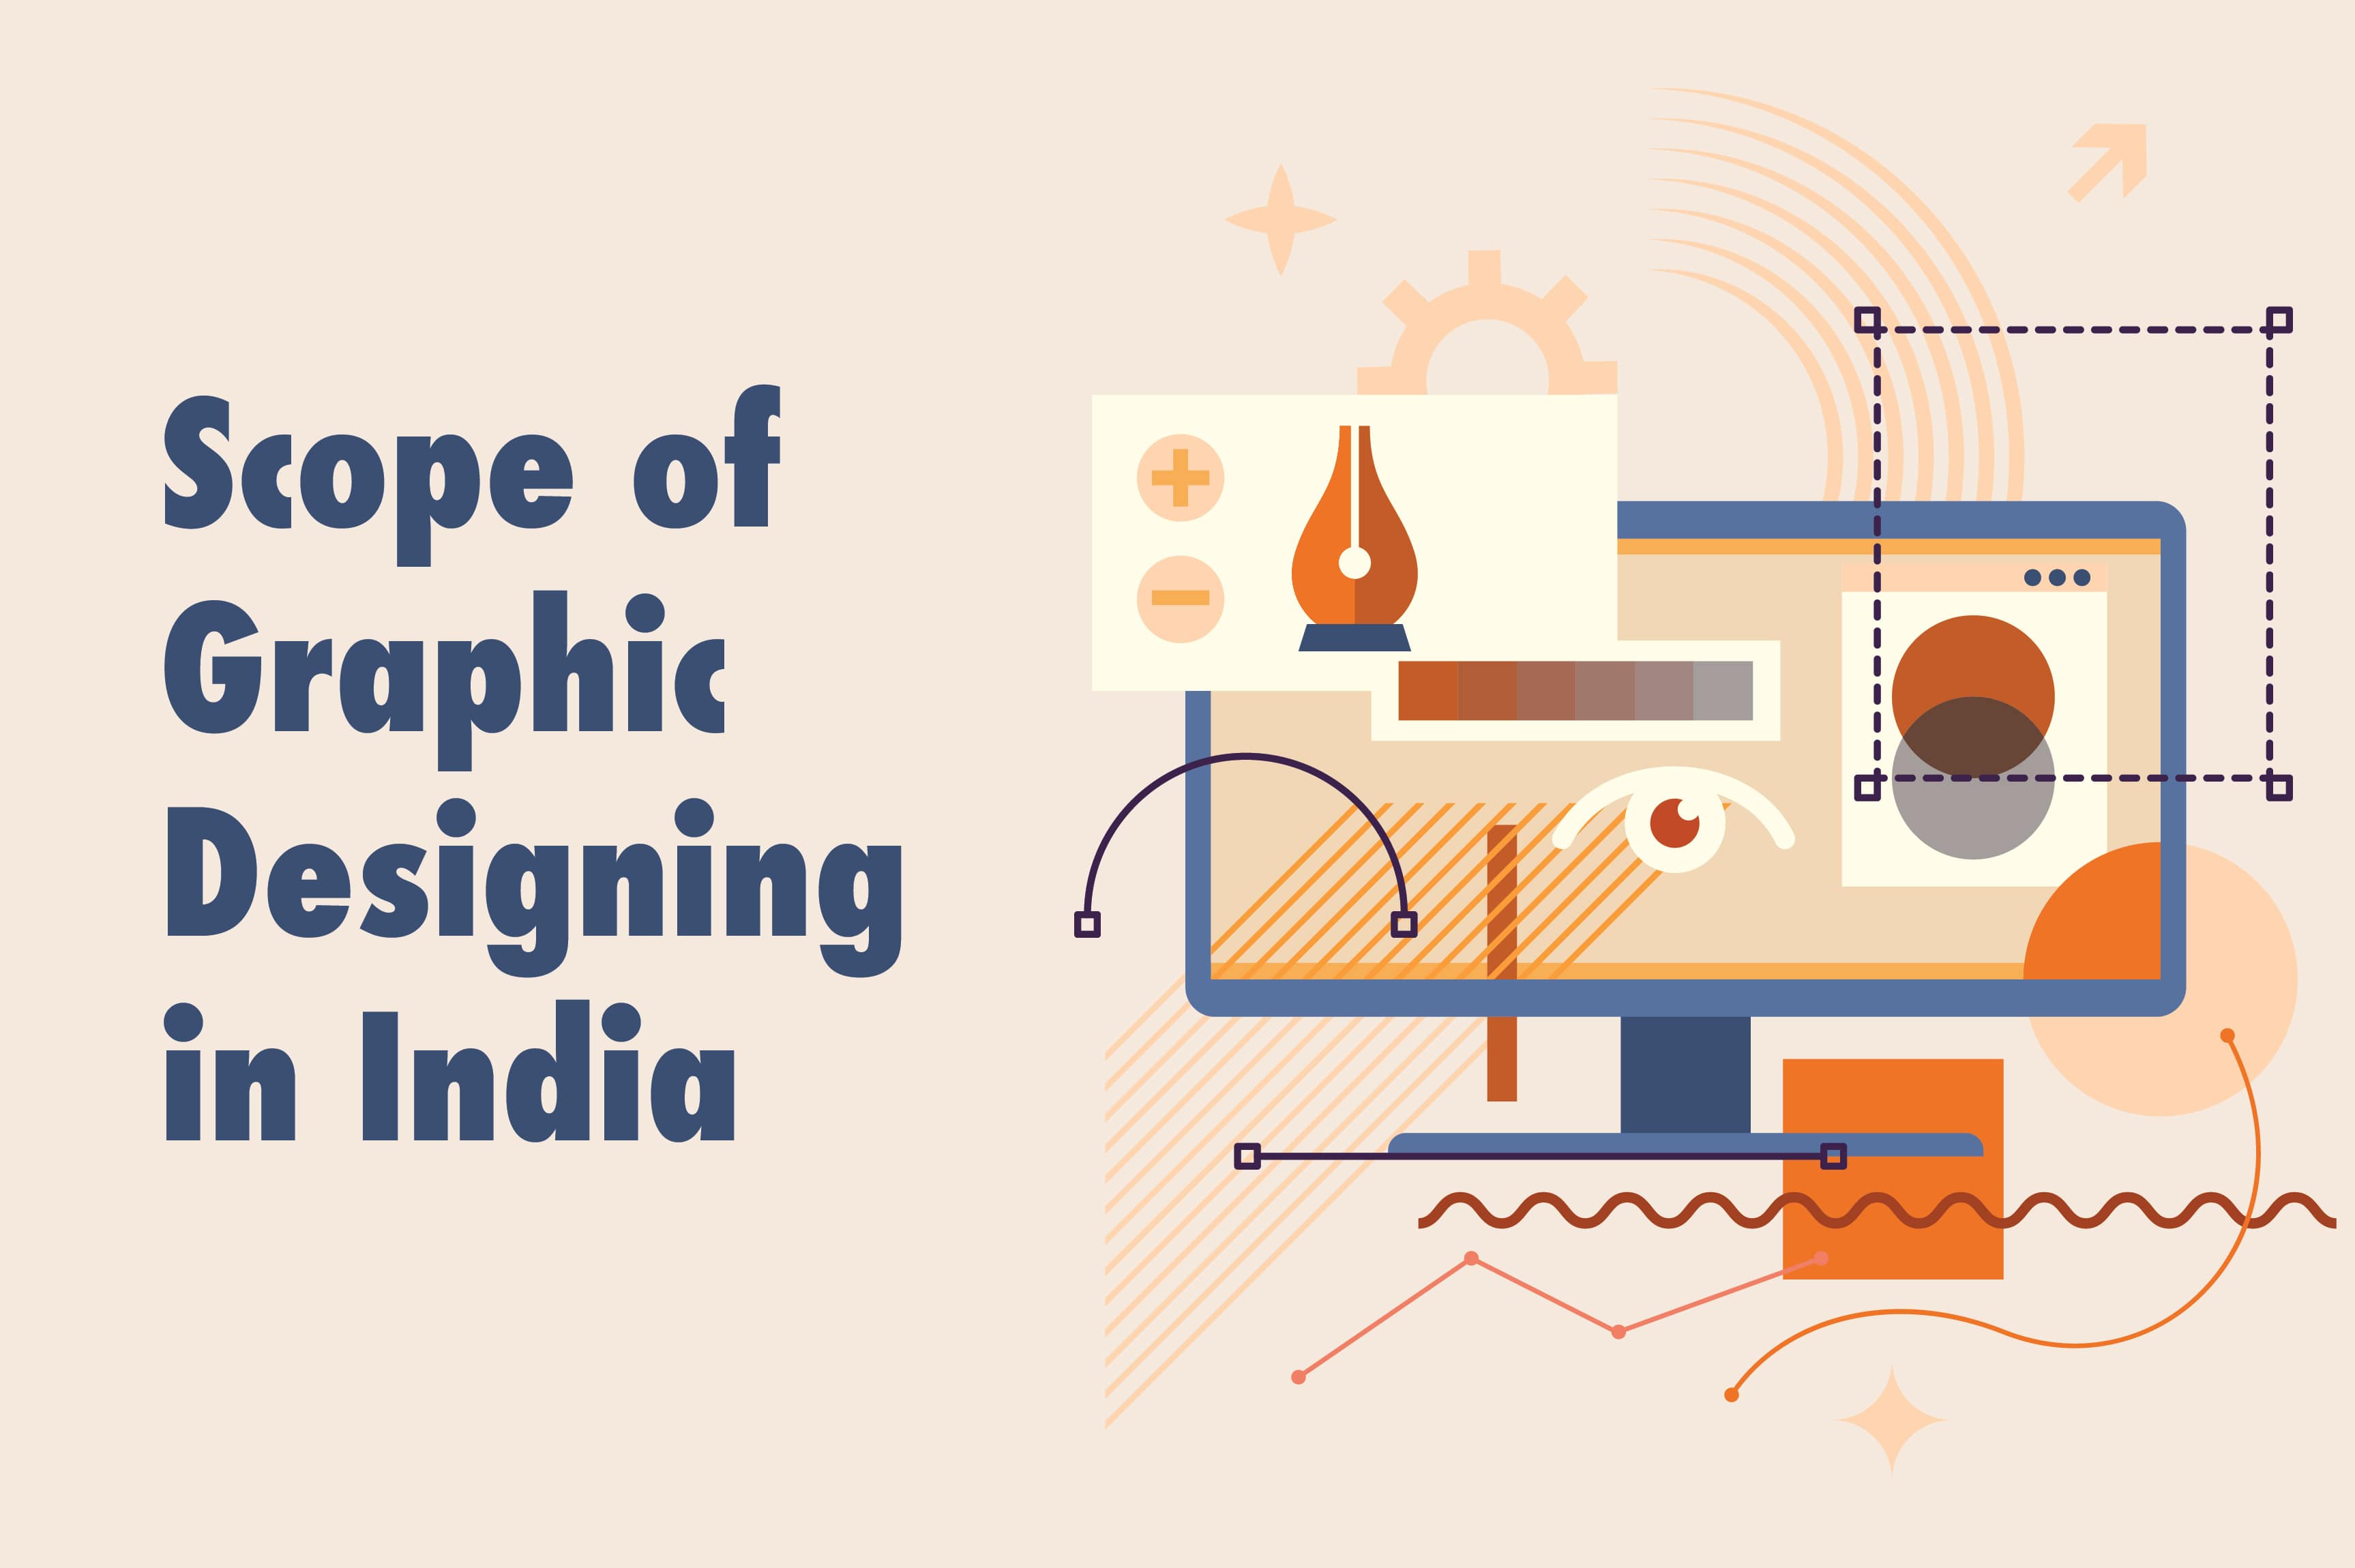 scope of graphic designing in India